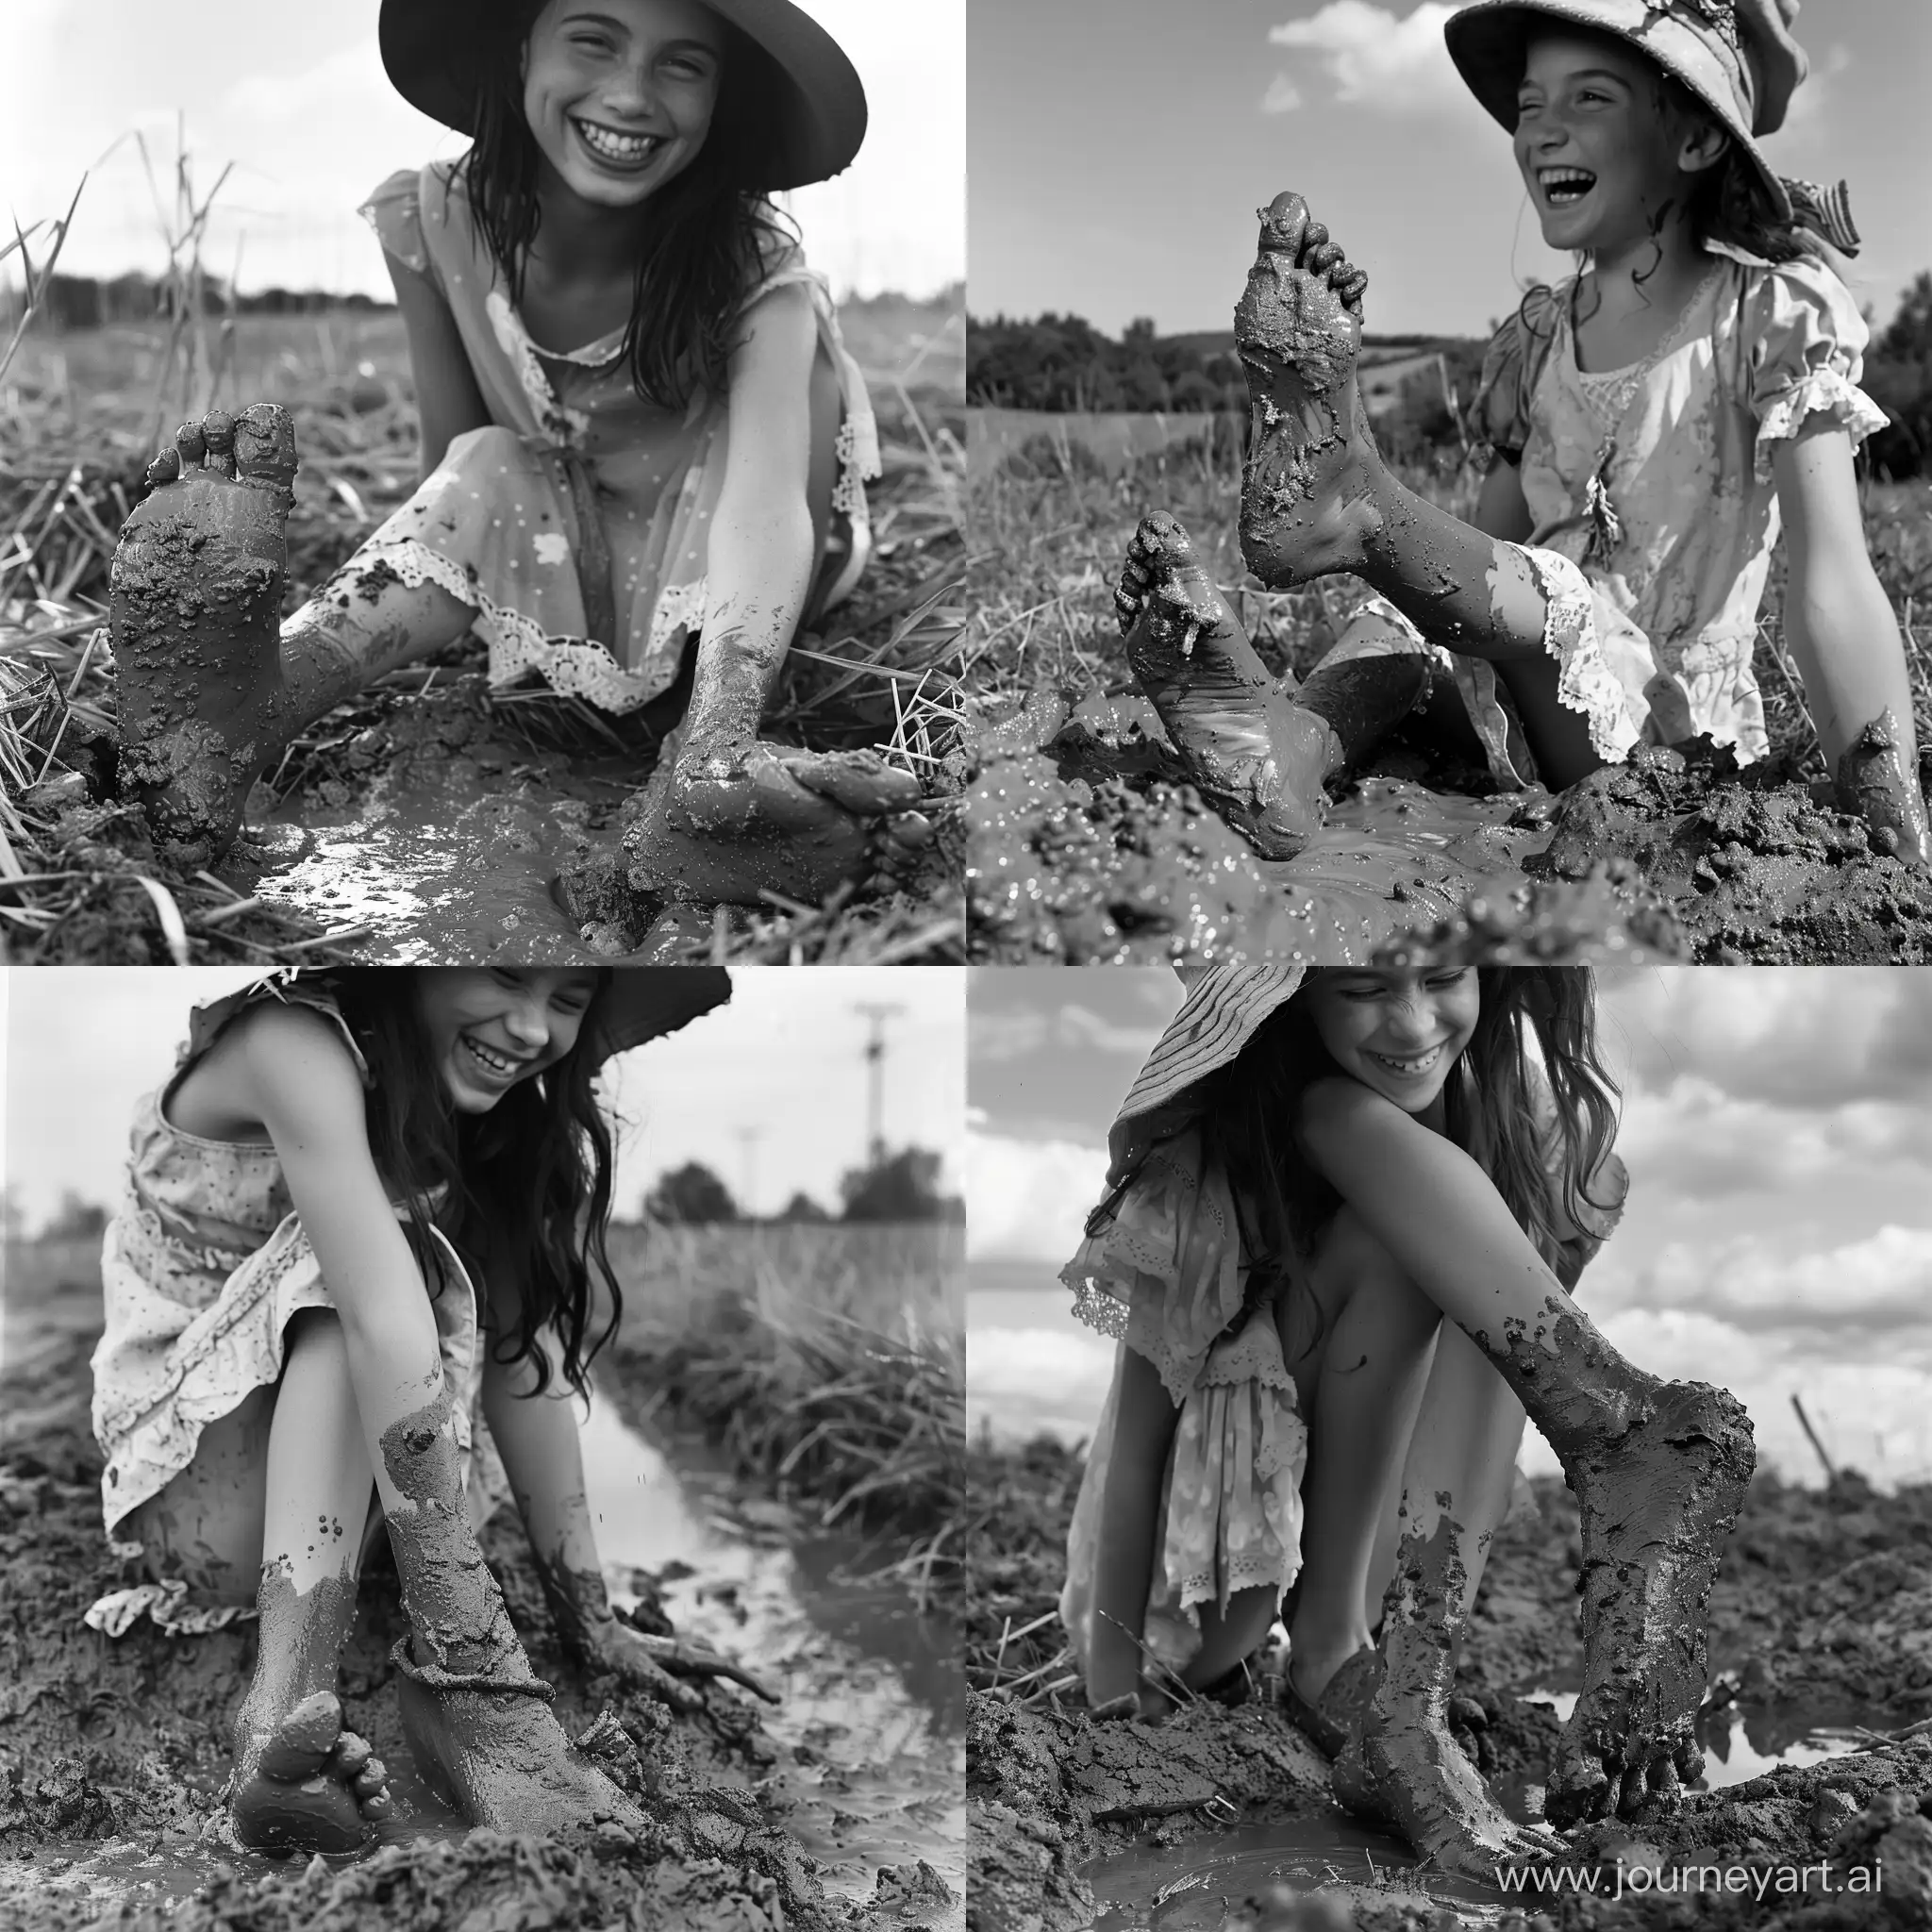 Девушка в платьице и шляпке погружает свои ноги (ступни) в грязь. Девушка смущённо смеётся. Ступни, покрытые грязью, крупным планом